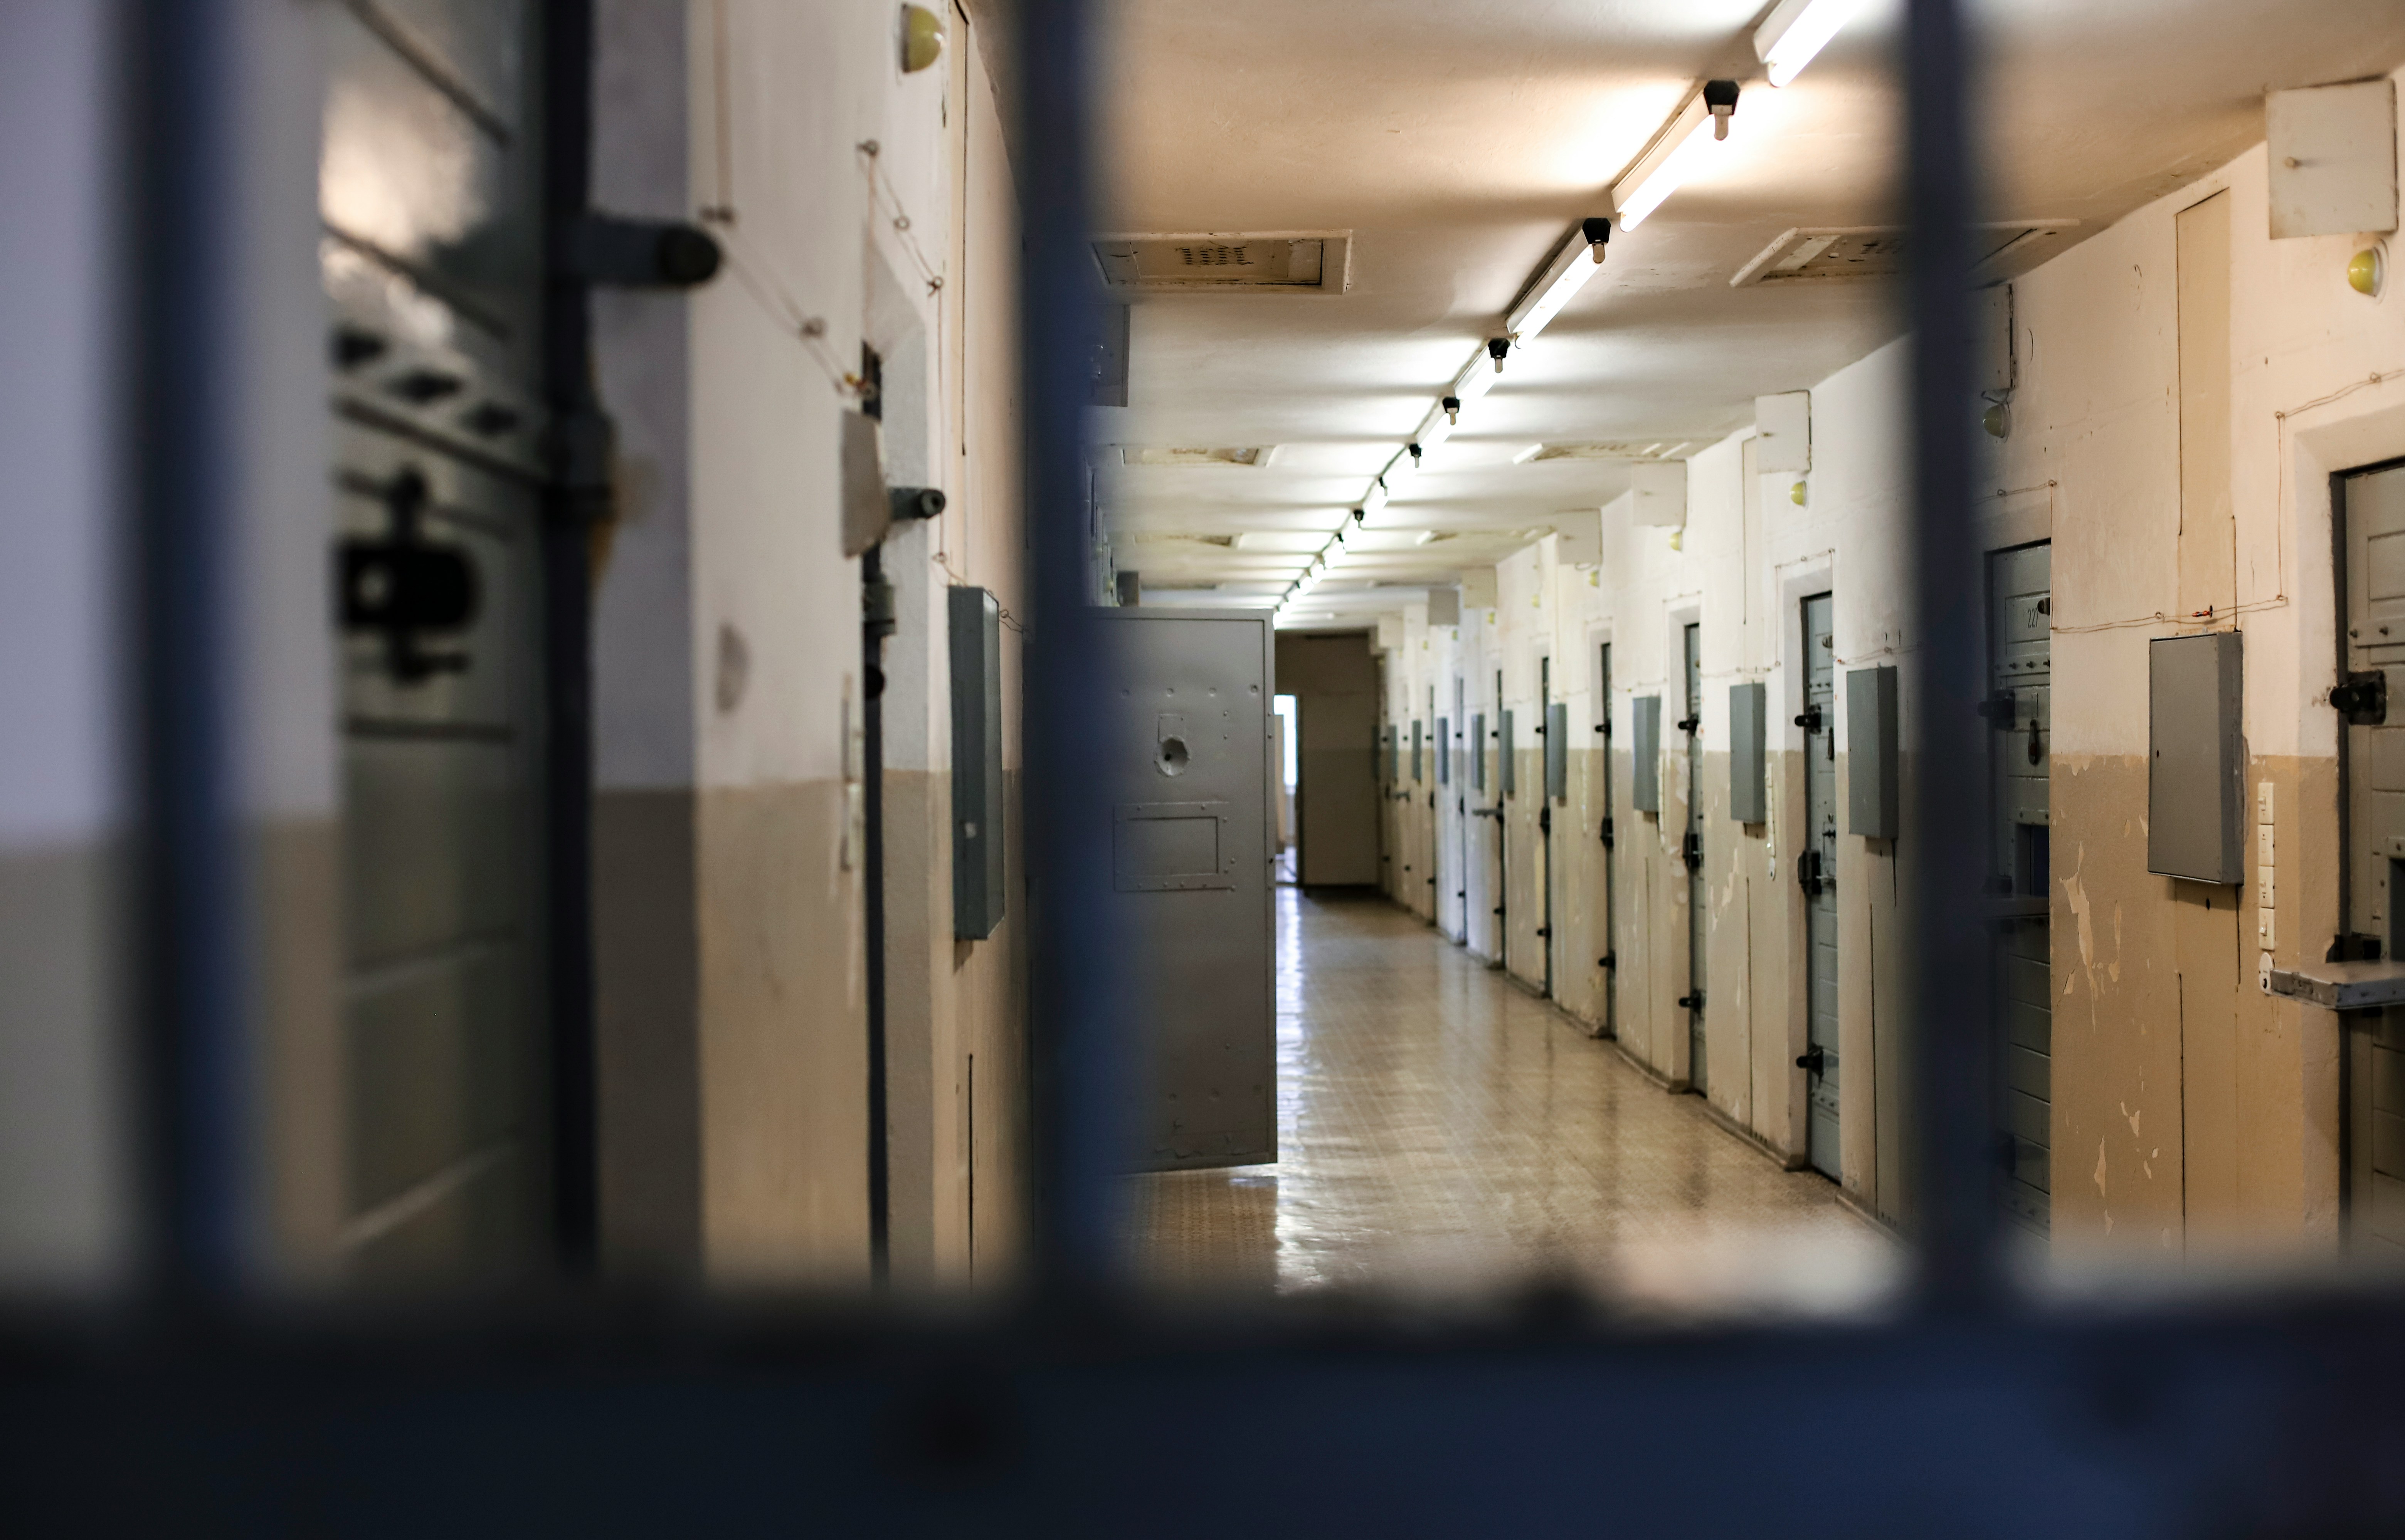 Pismo bralca razkriva zaskrbljujoče stanje v mariborskem zaporu